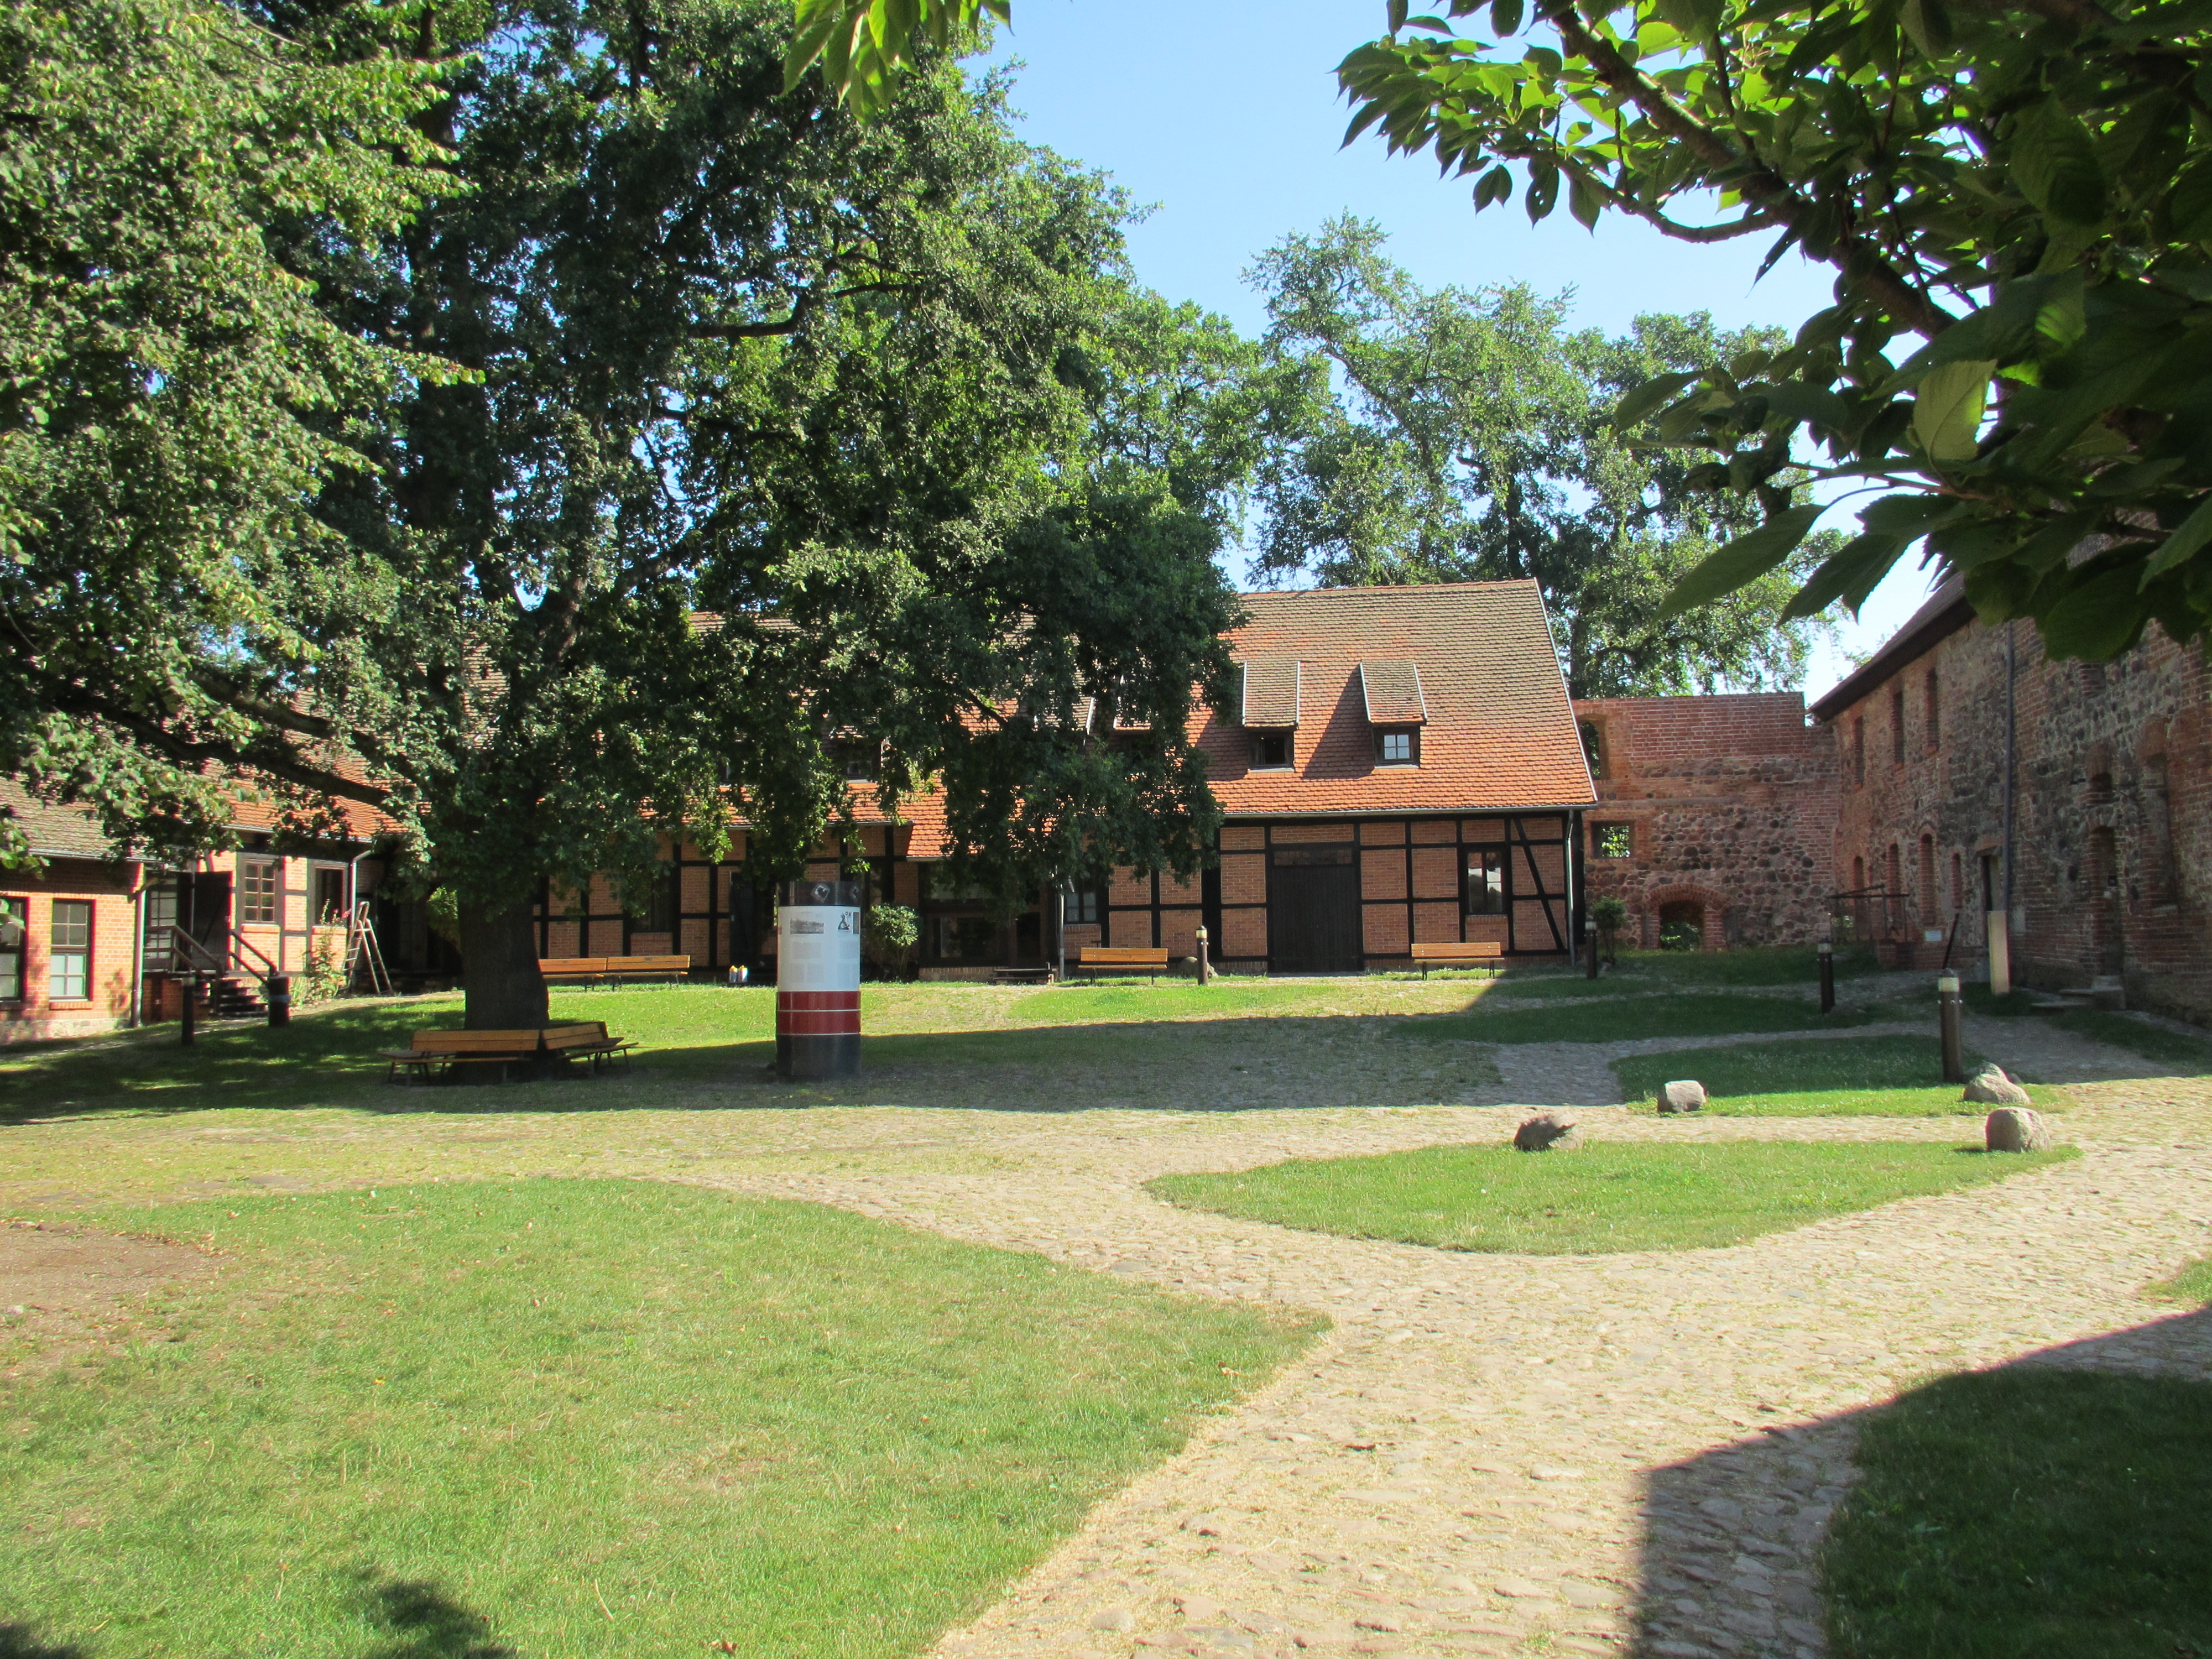 Burg Beeskow.
